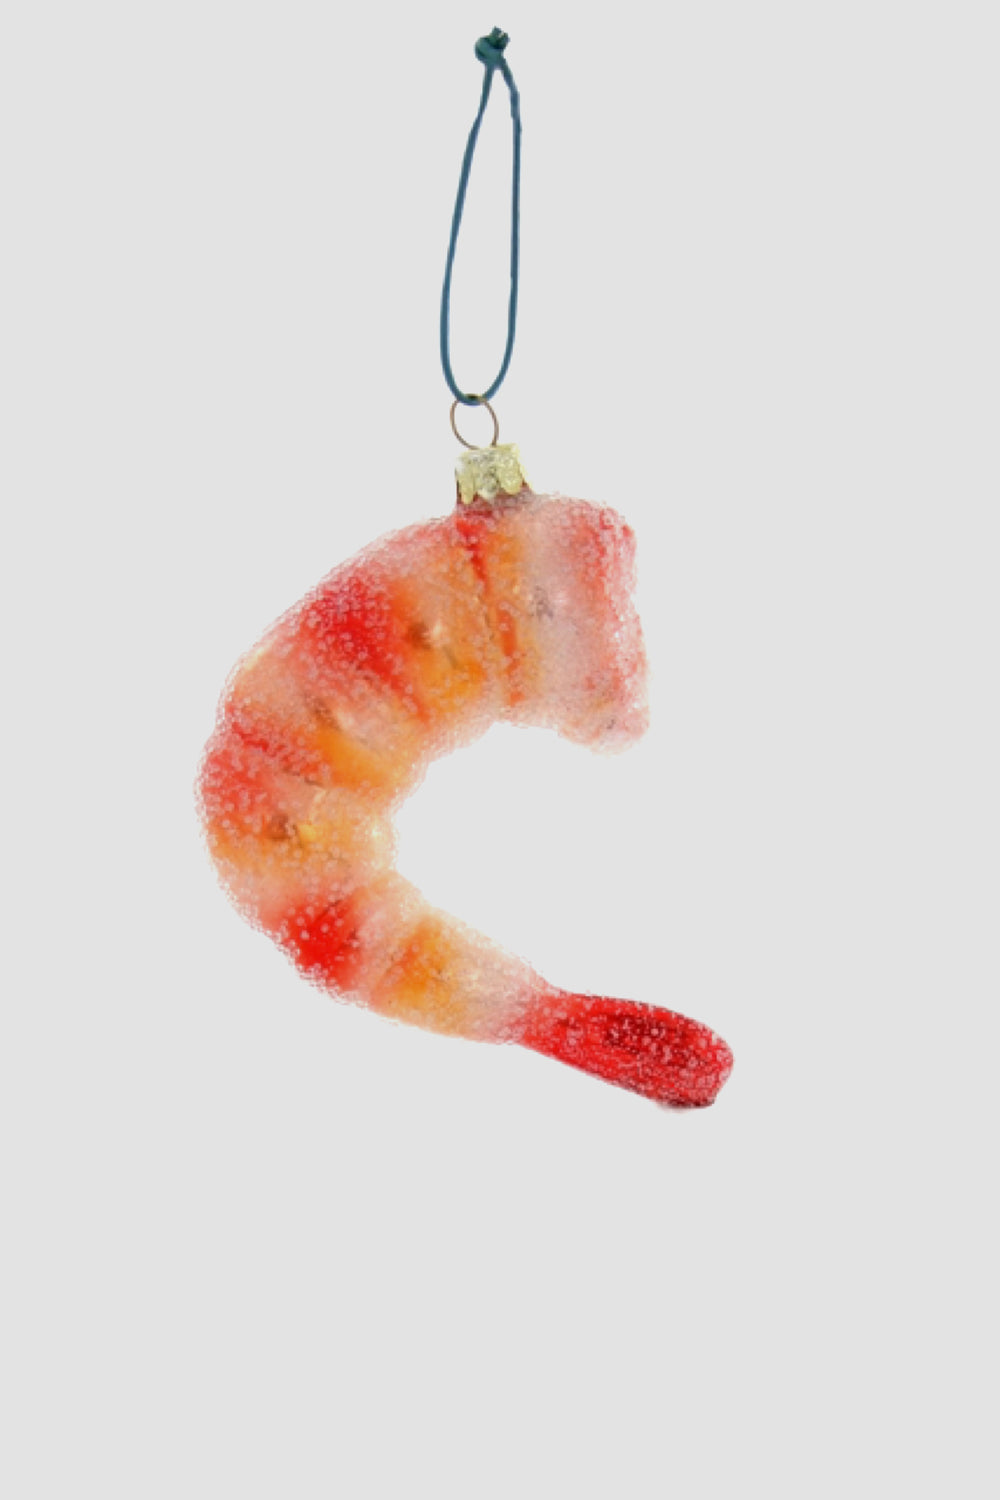 Cocktail Shrimp Ornament